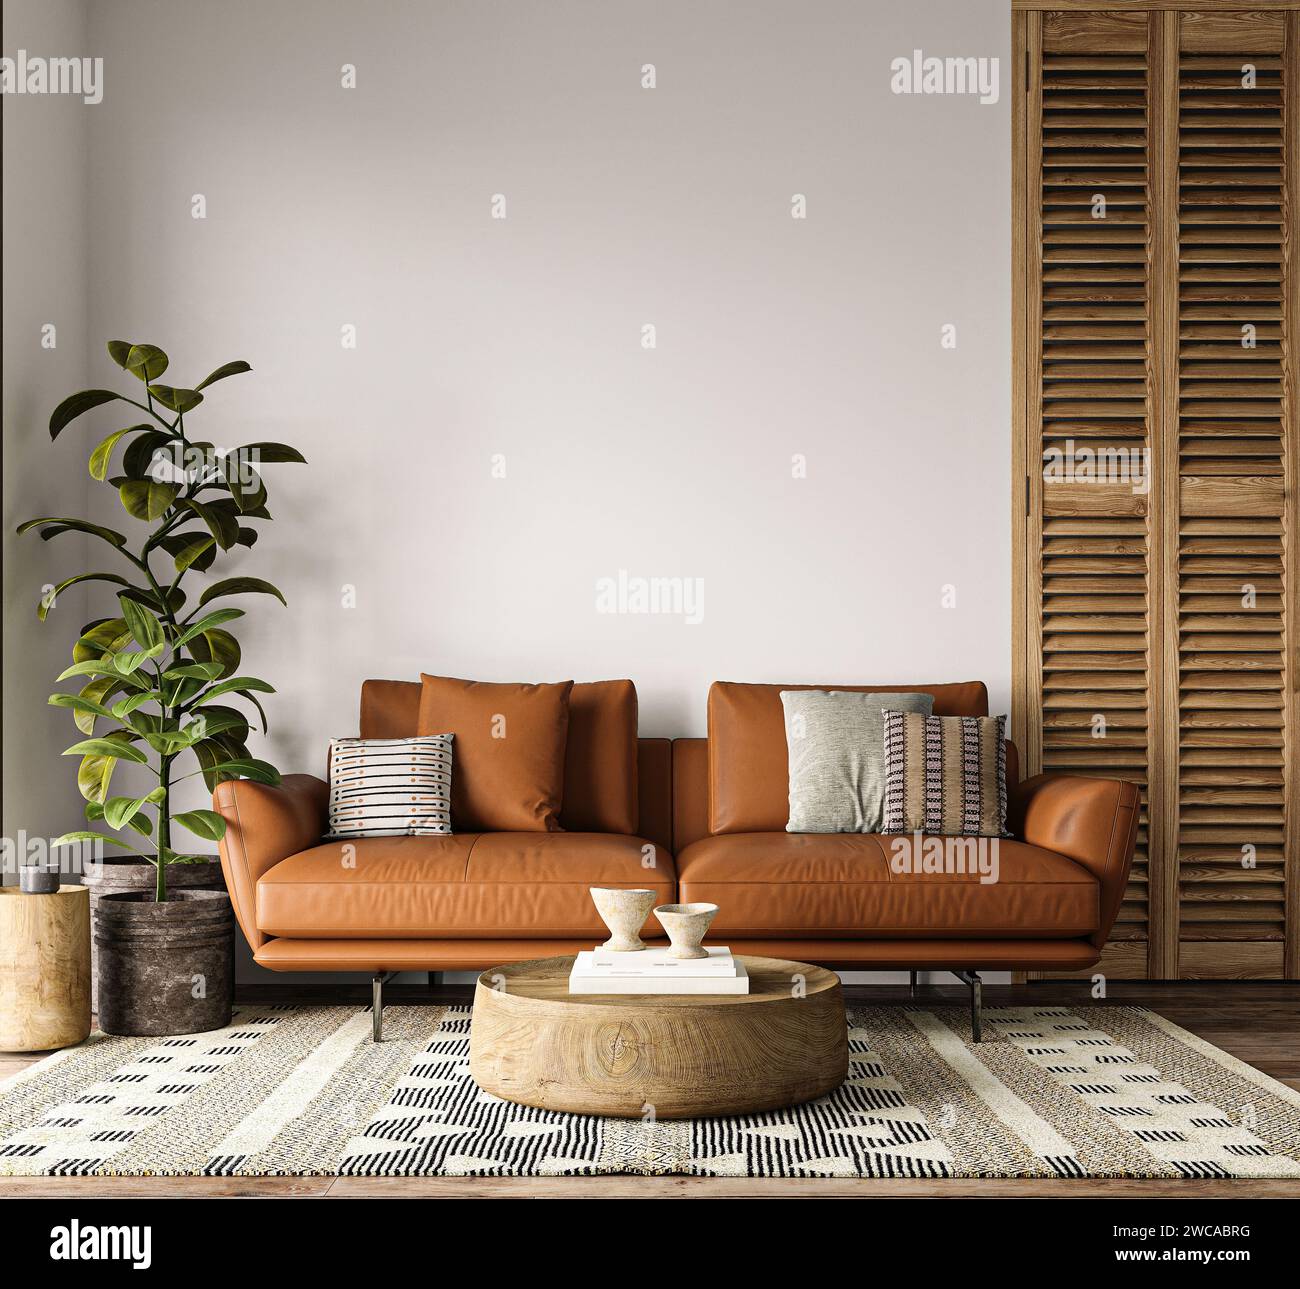 Accogliente spazio abitativo con vivace divano in pelle caramellata, tappeto eclettico e dettagli in legno naturale Foto Stock